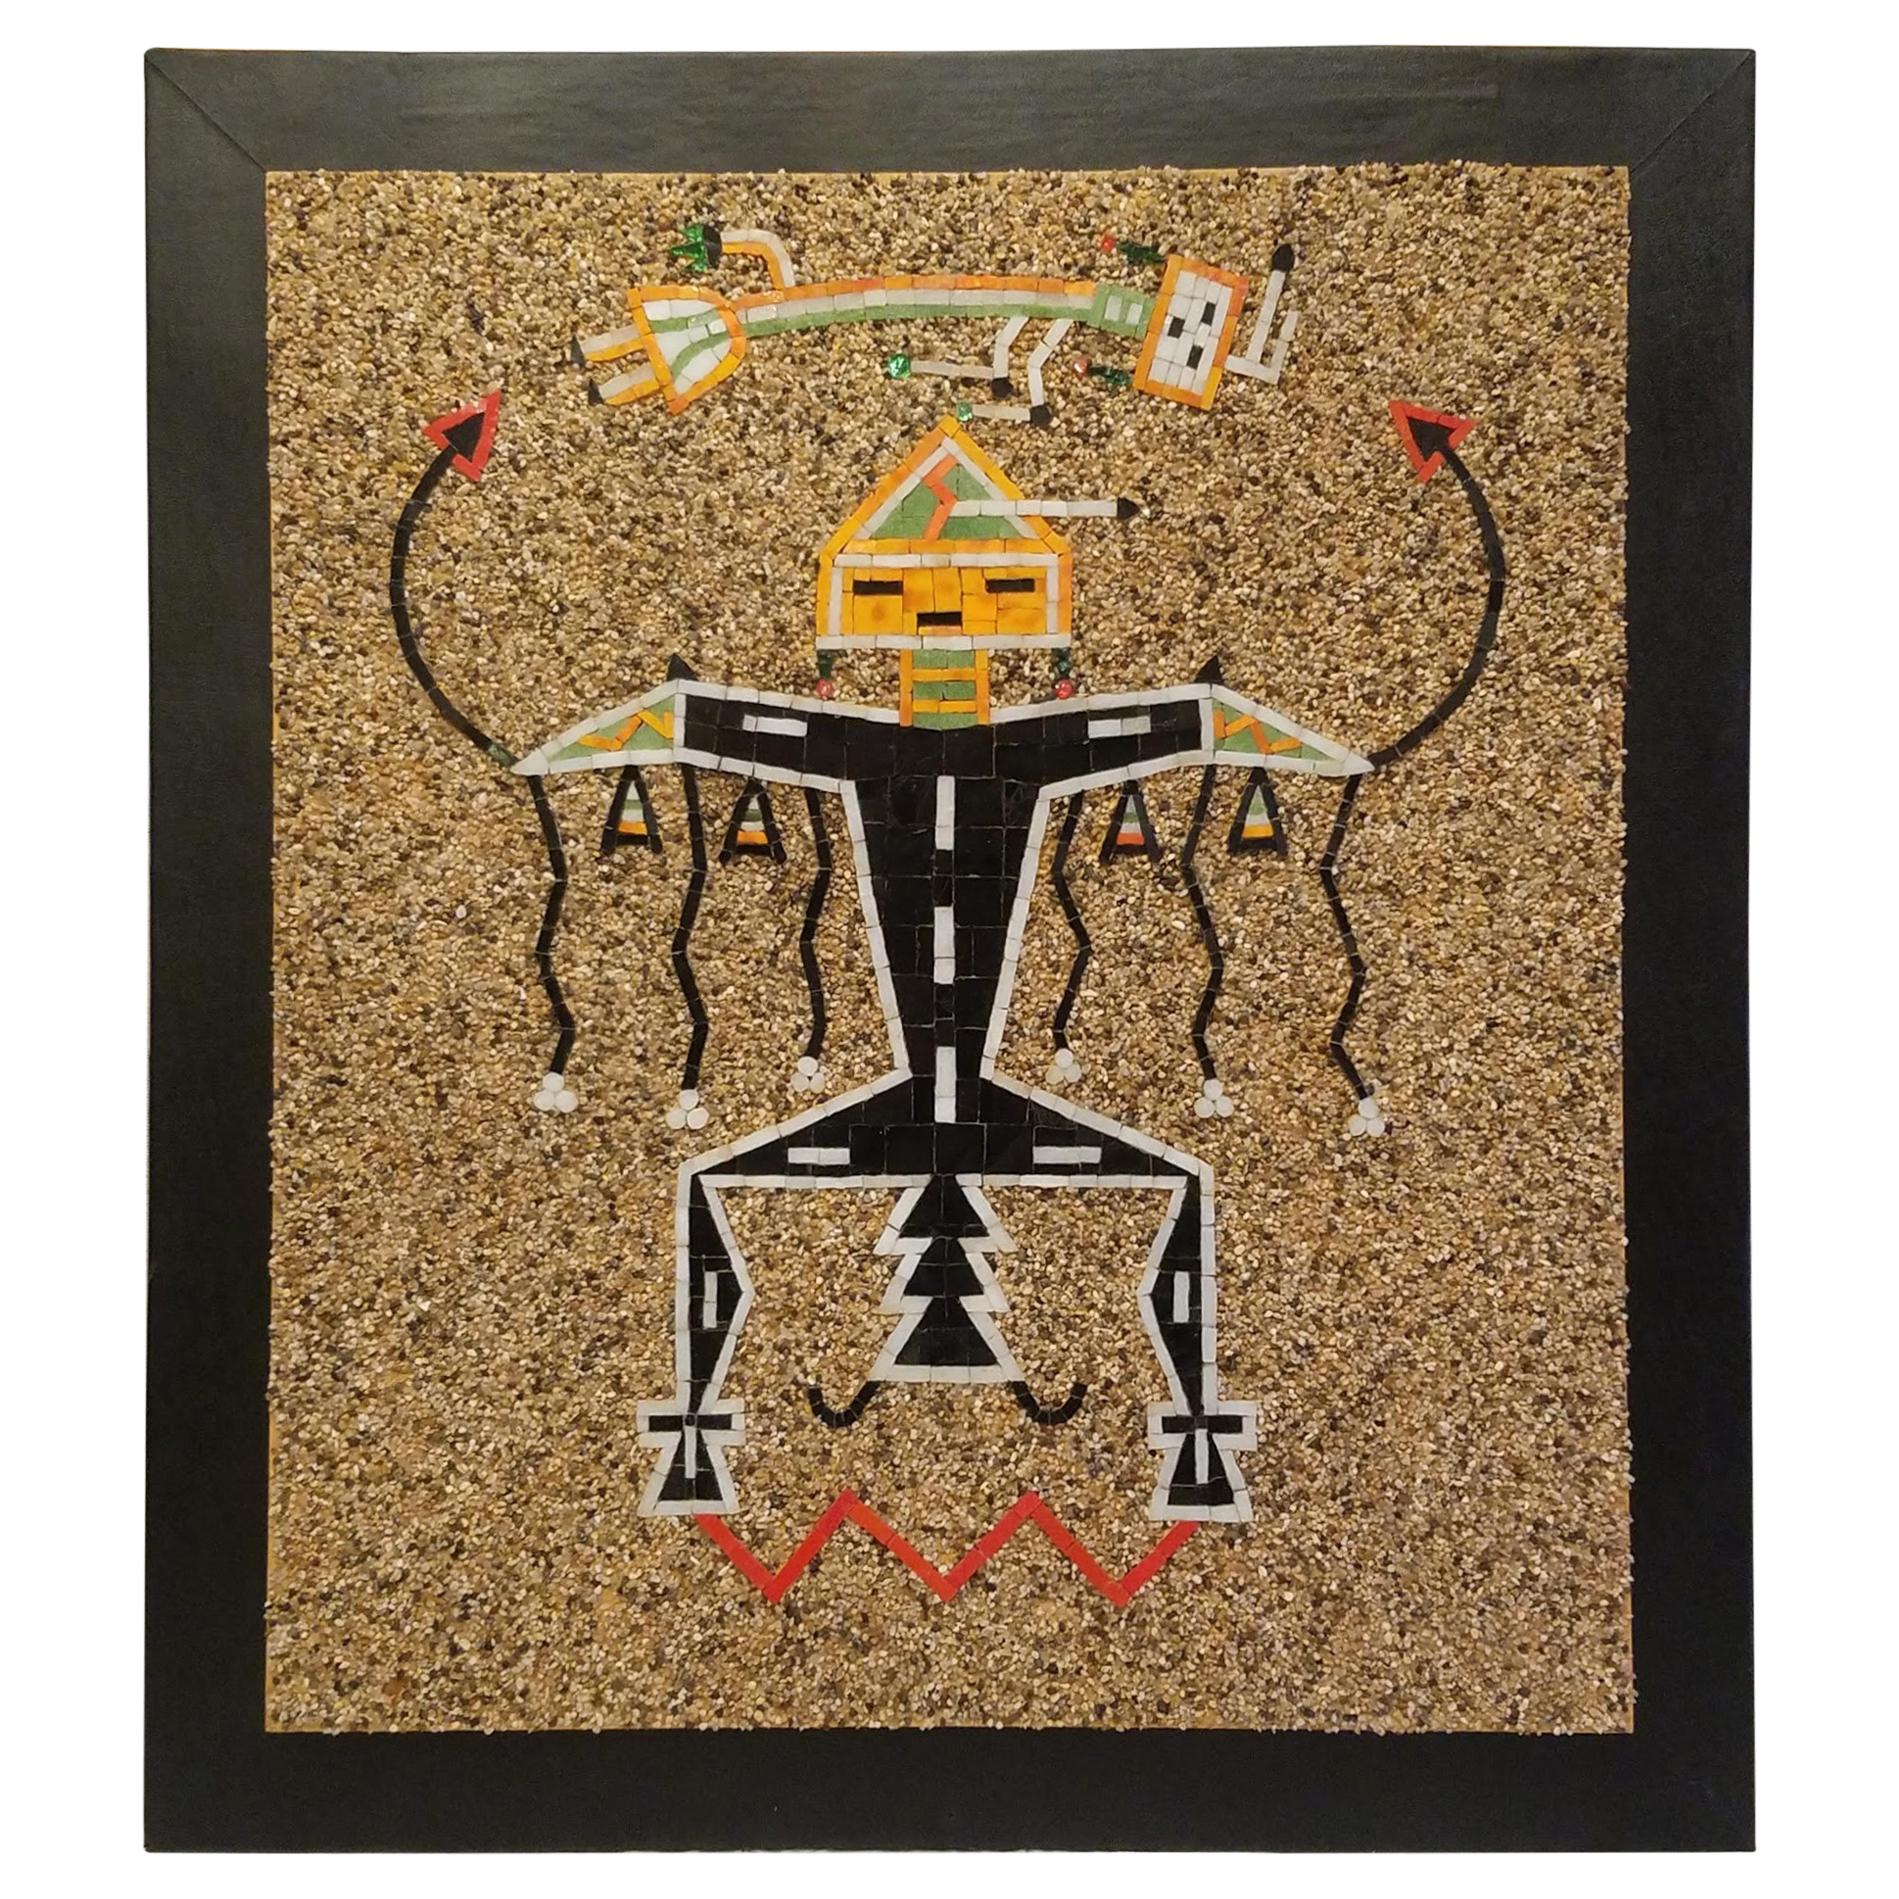 Kalifornien California Studio Navajo Sandmalerei Mosaik-Kunsttafel mit Thunderbird, 1960er Jahre